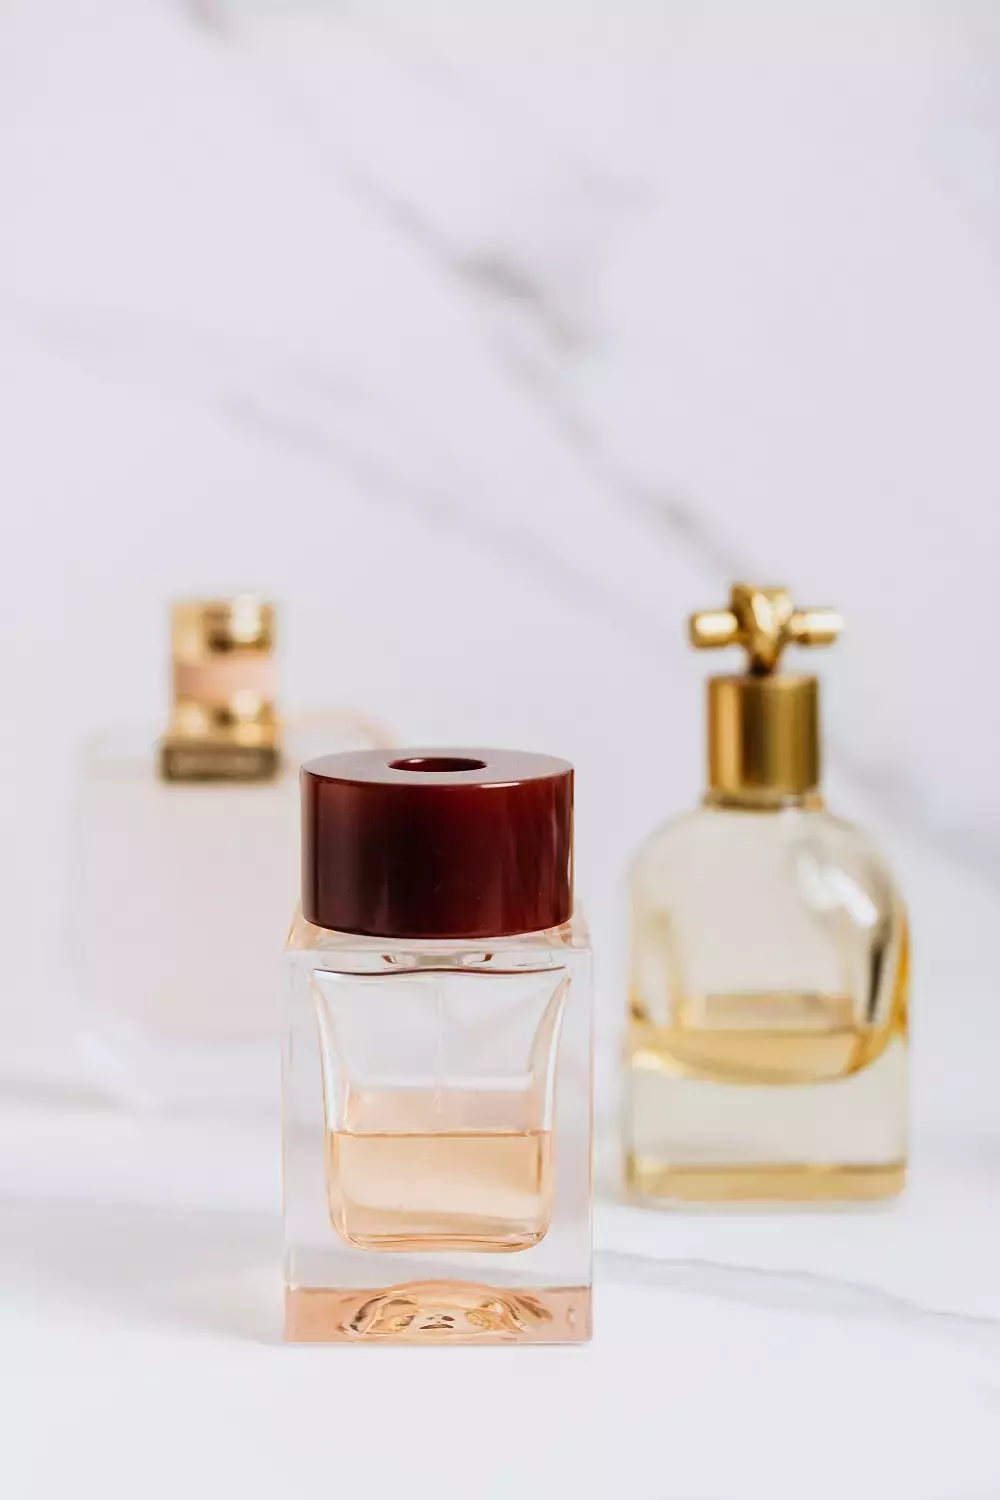 eshop Onlineparfum - dámské parfémy